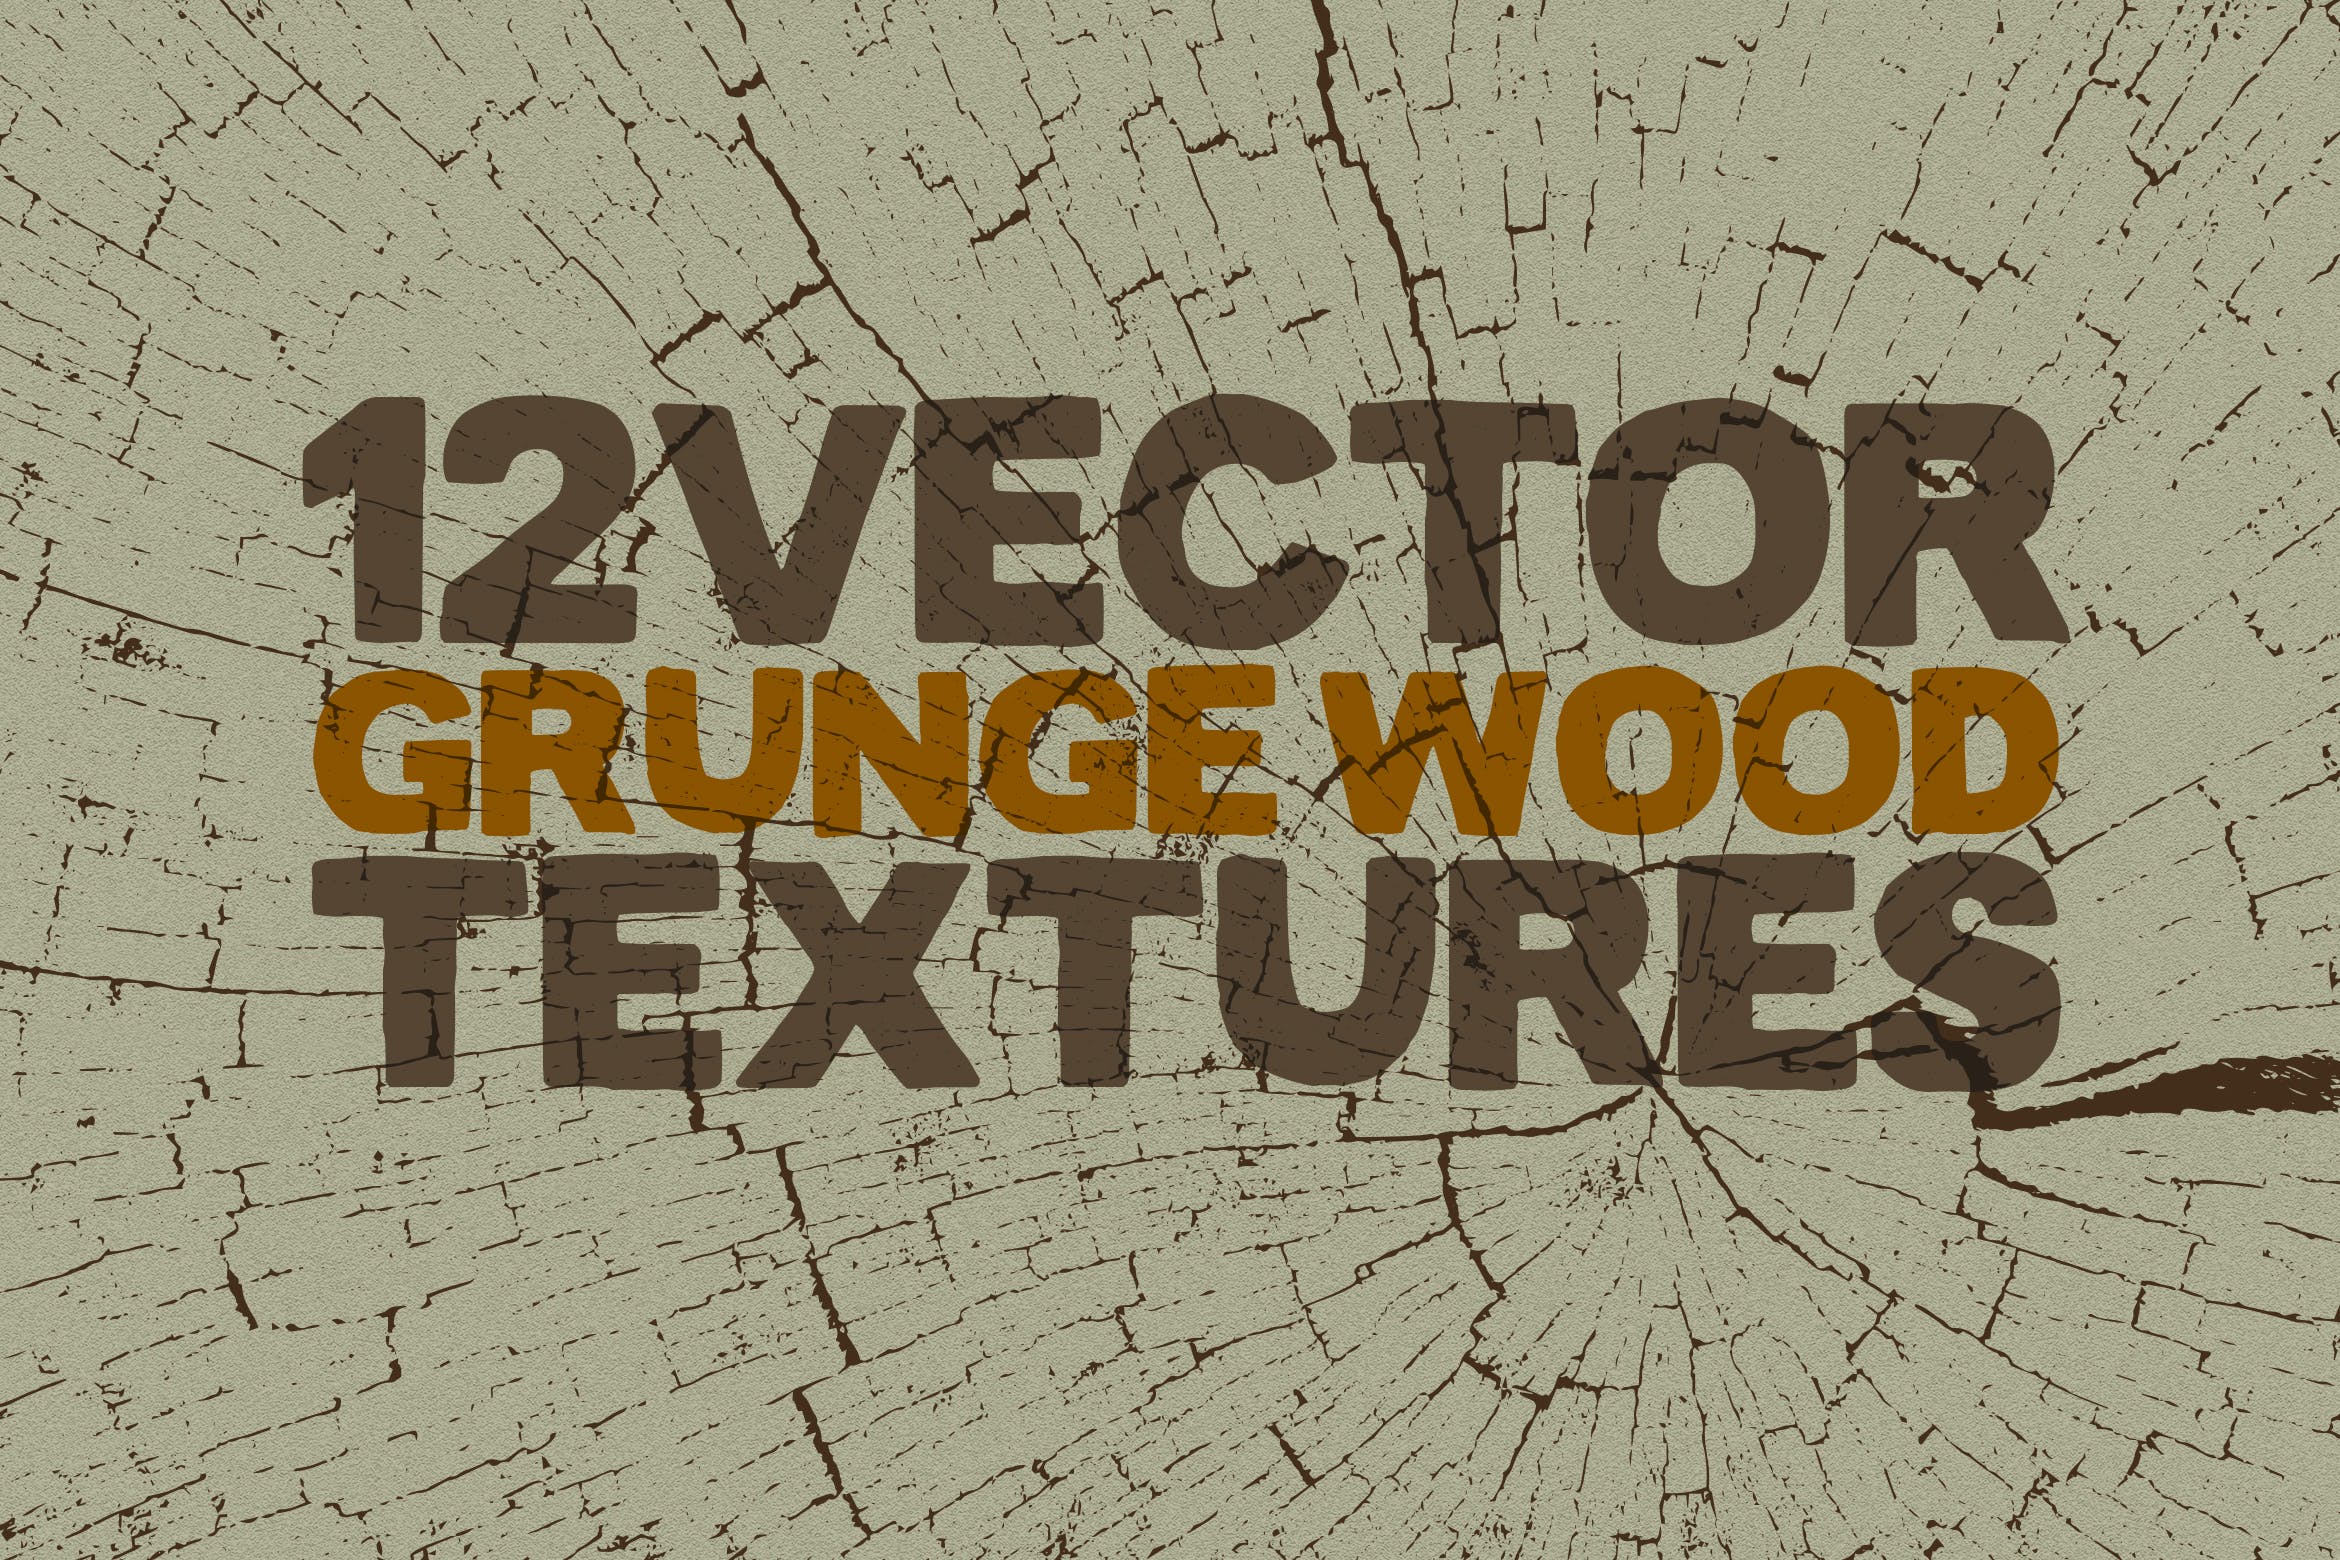 12个实木木纹矢量纹理背景素材 Vector Grunge Wood Textures x12插图